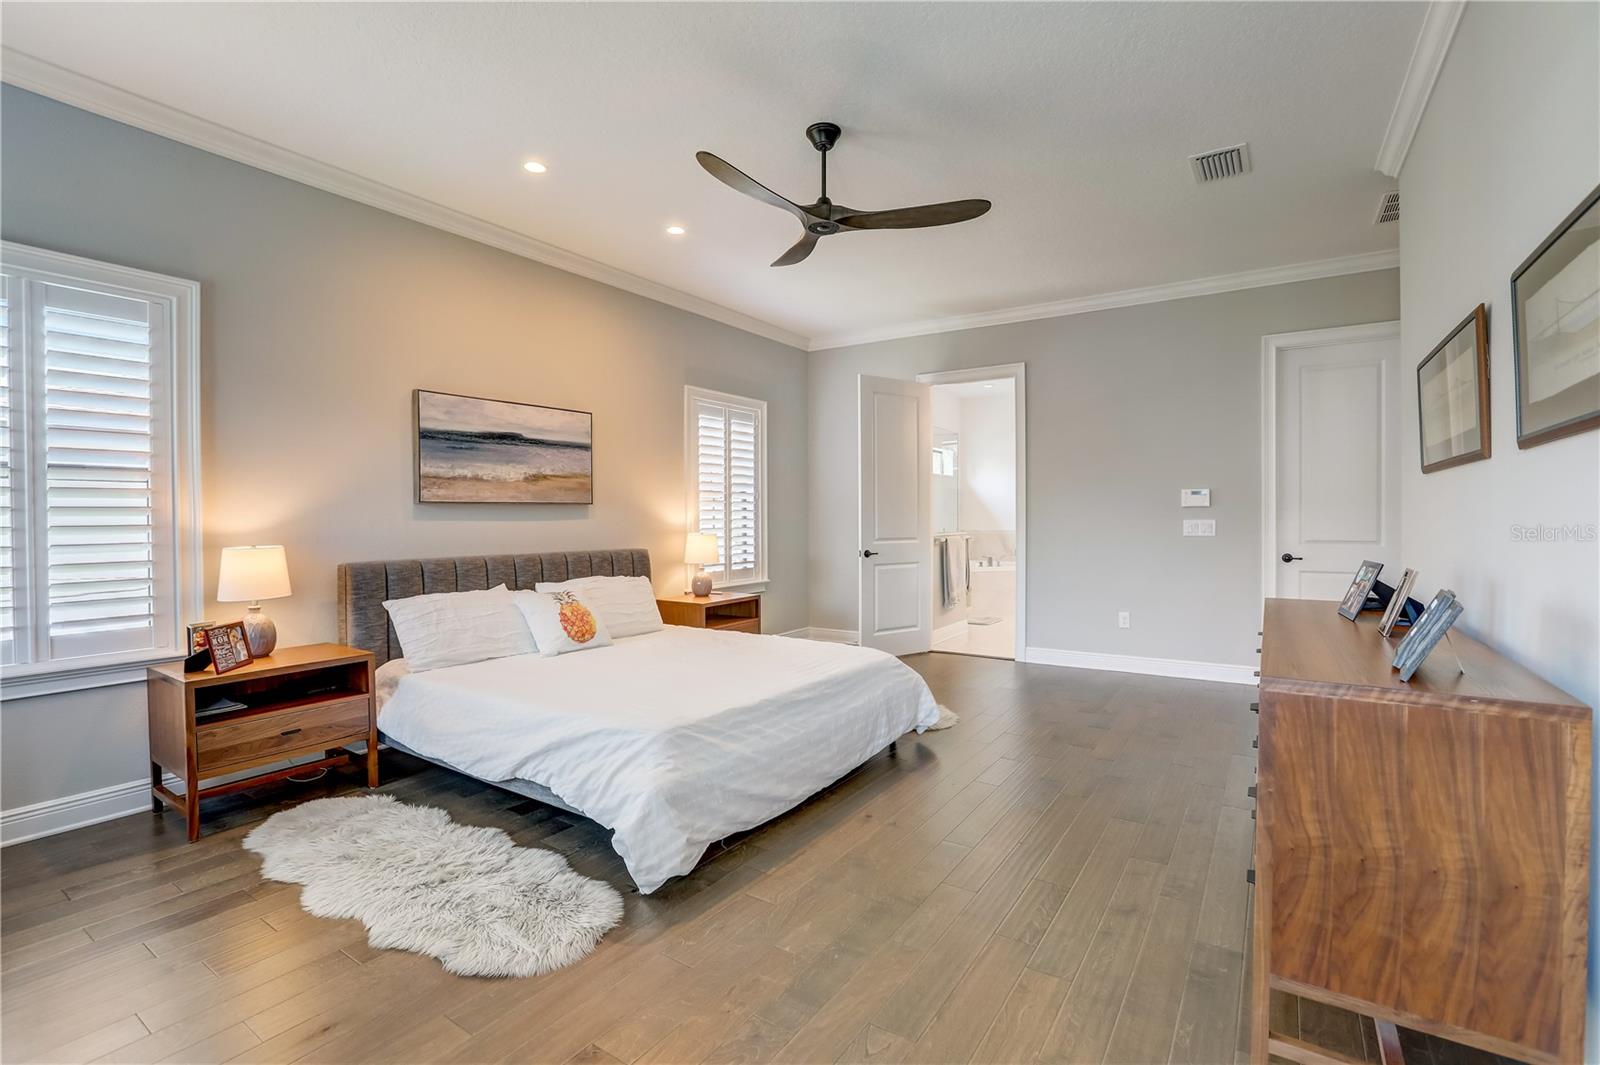 Owners suite bedroom, 2 walk-in closets, engineered hardwood floors, recessed lighting & ceiling fan